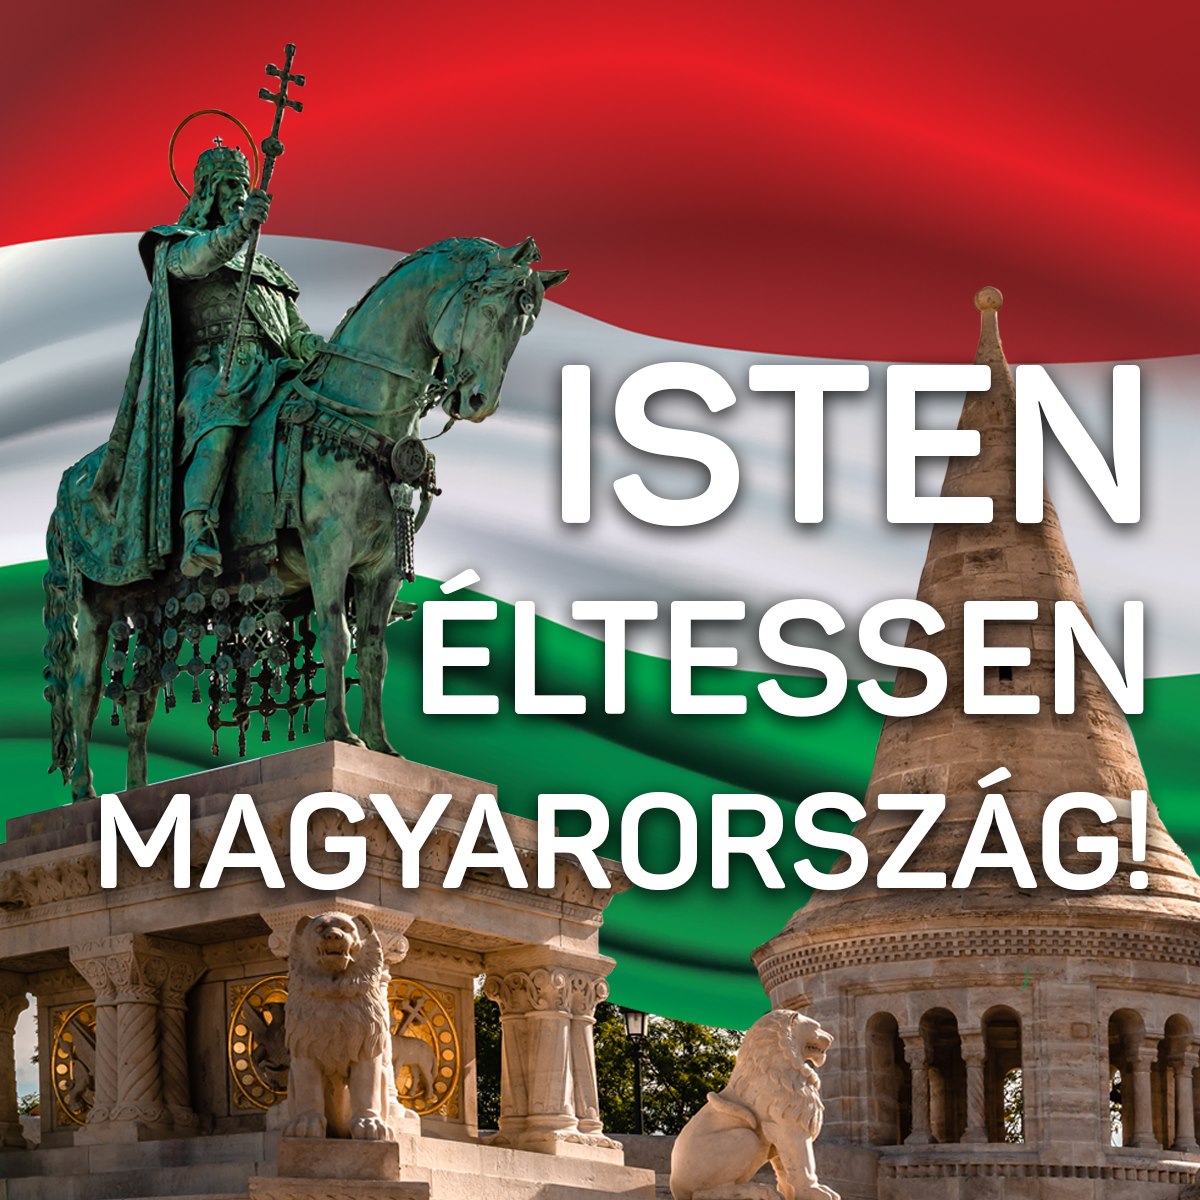 Mi, magyarok ezer éve élünk itt, a Kárpát-medencében, és szeretnénk még legalább ezer évig itt maradni, megőrizni a határainkat, és továbbadni a következő generációnak.